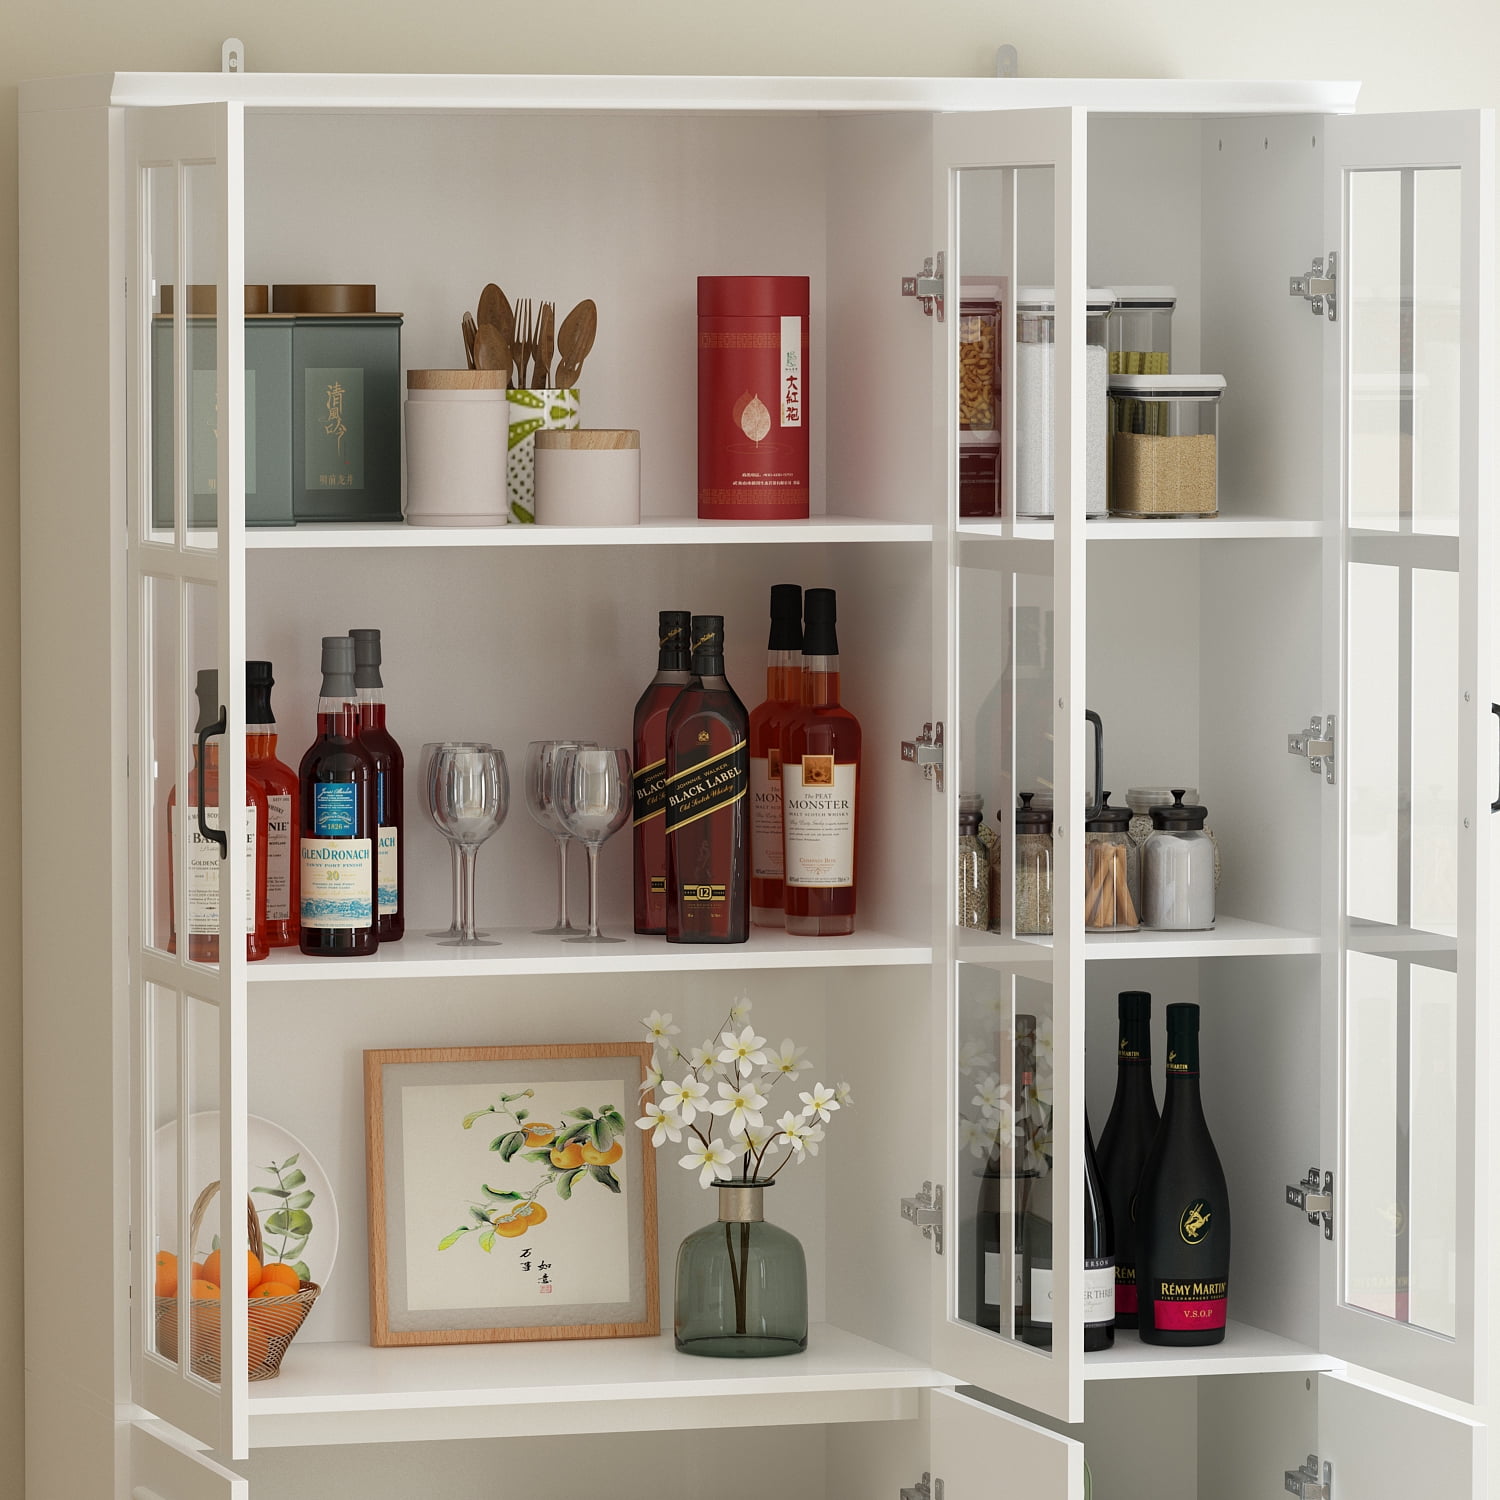 Tobias 5-Tier Kitchen Standing Storage Shelf Space Saver Mint Pantry Finish: Maple Sakuragi